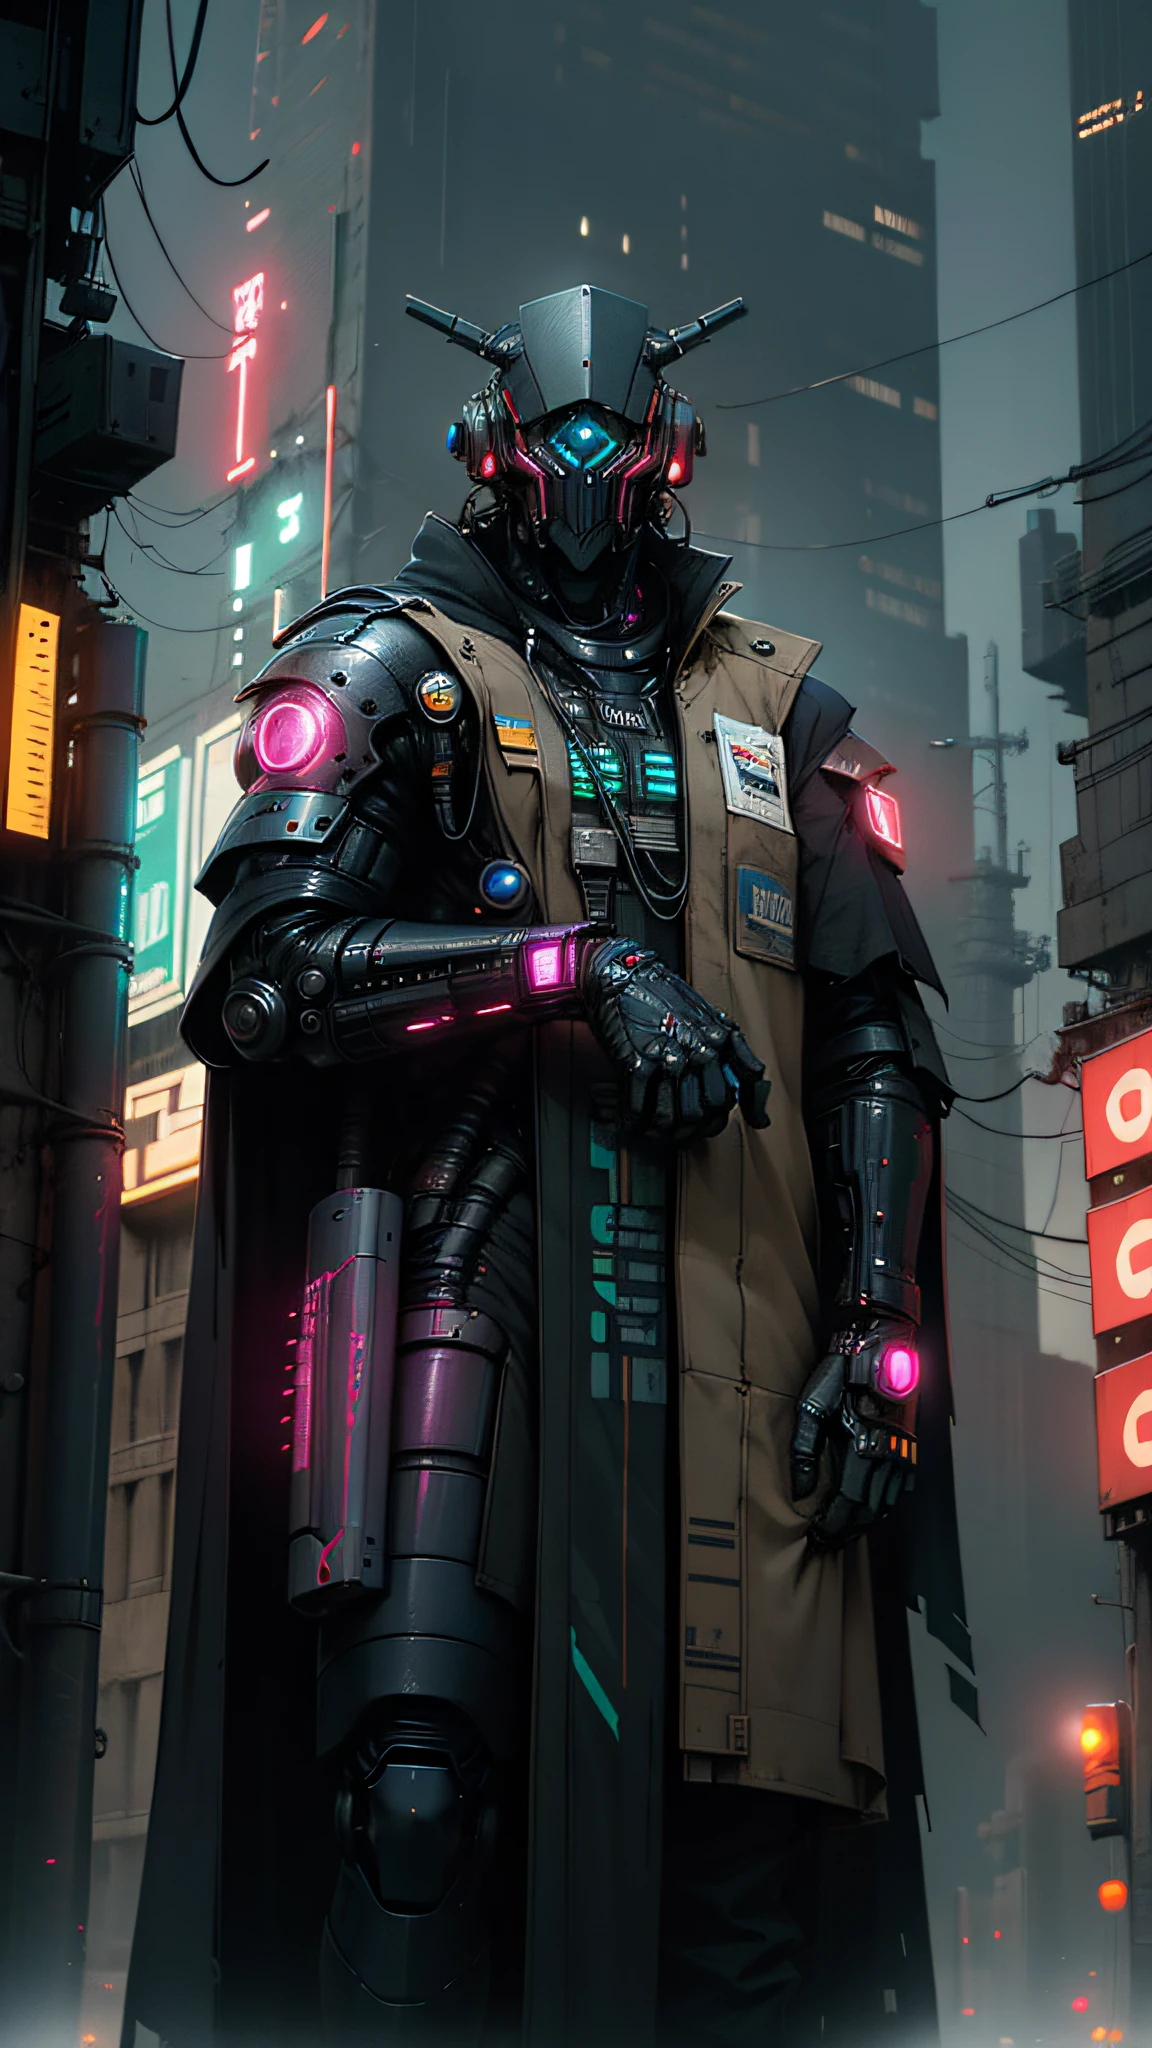 Robort Derpd Ranger يعمل لدى شركة Scifi Mega Corporation, نخبة منفذي الشركات يقومون بدوريات في الشوارع, يرتدي رداءًا مفصلاً متعدد الألوان, مكاتب الشركات,مشهد السايبربانك, شارع مكتظ, أضواء النيون,